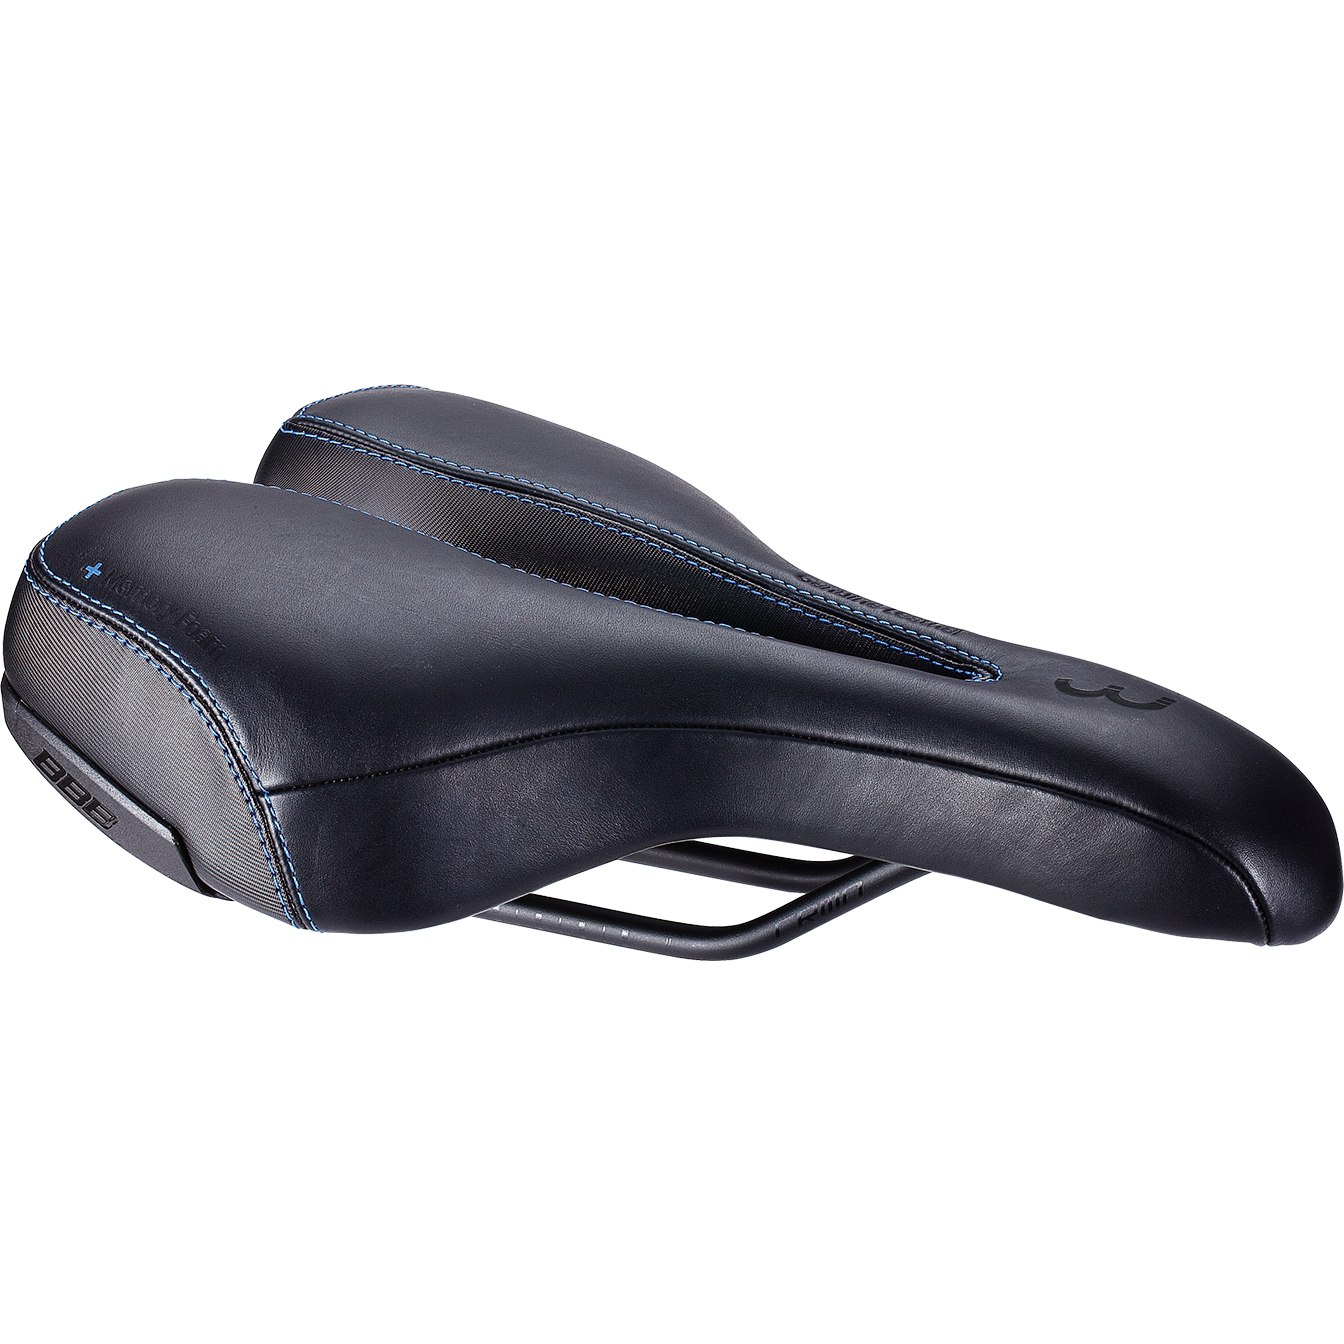 Produktbild von BBB Cycling SportPlus Active Leather BSD-113 | BSD-114 Sattel - schwarz